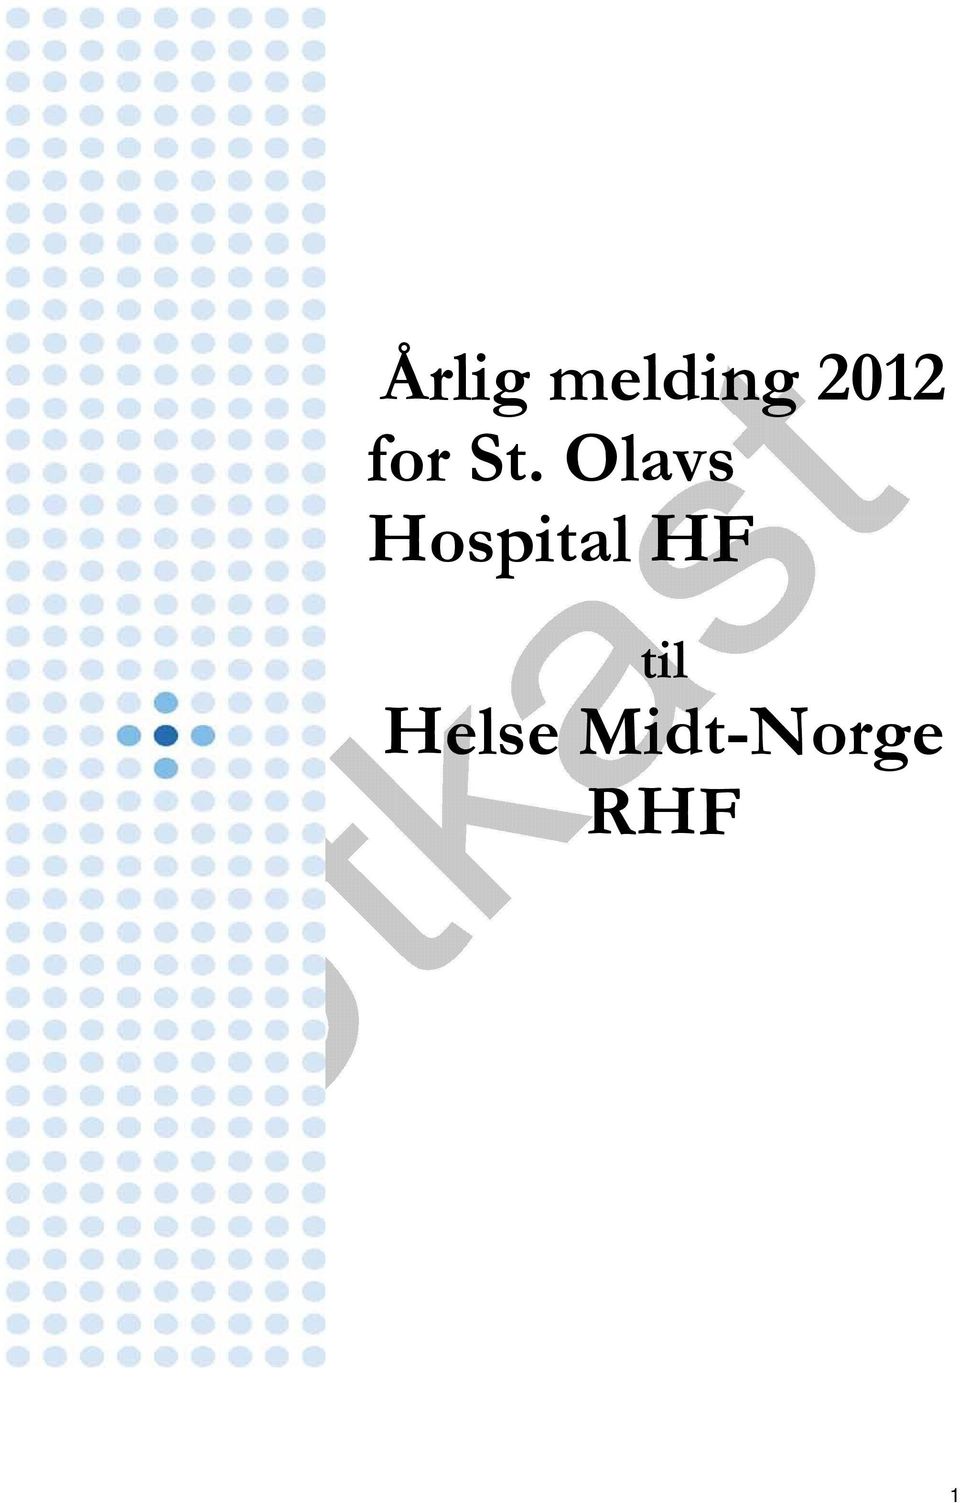 Olavs Hospital HF